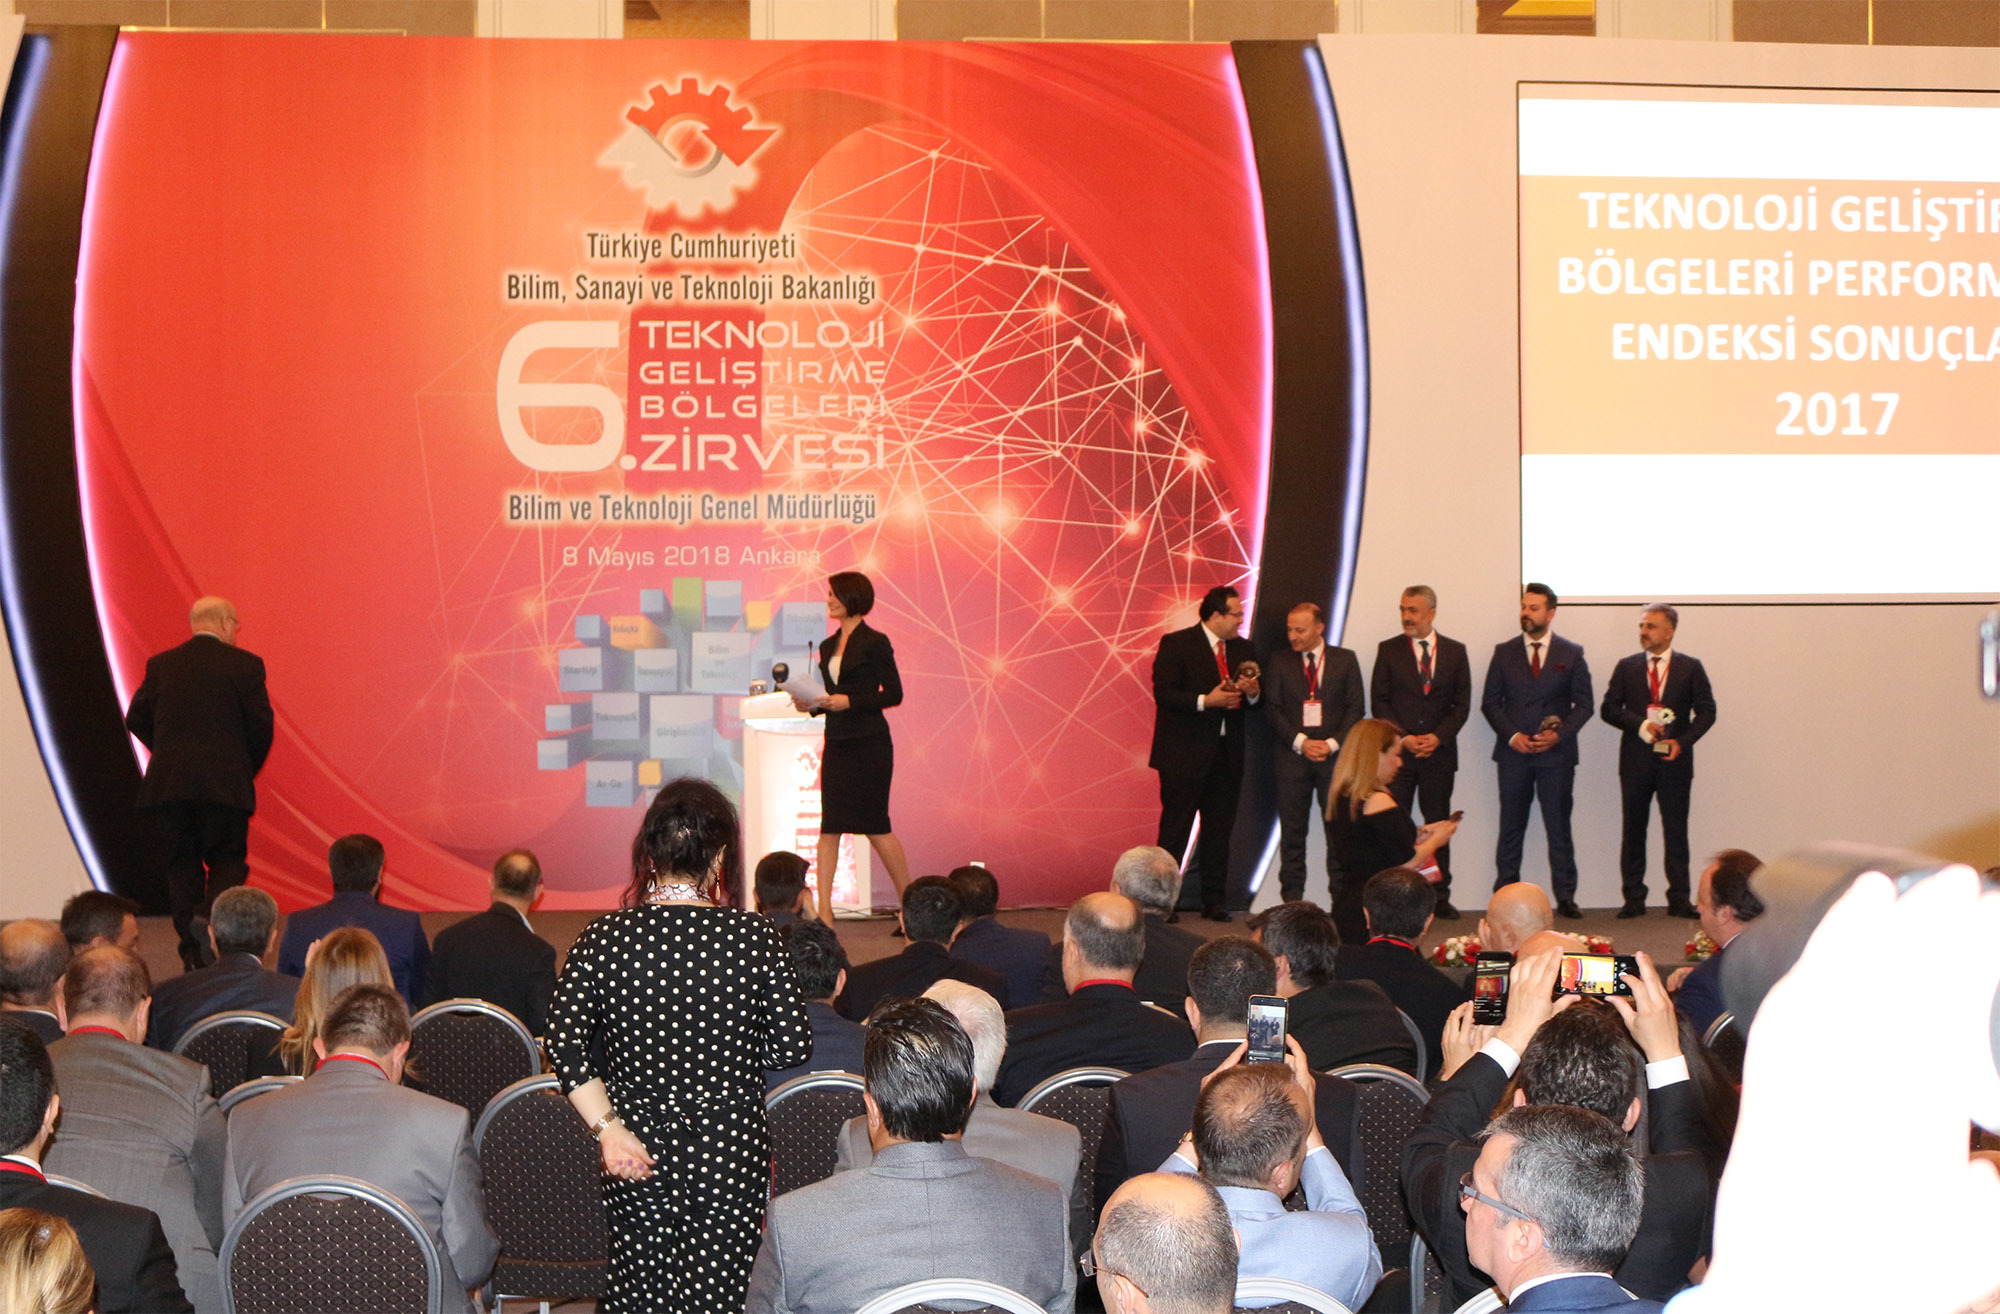 Bilim, Sanayi ve Teknoloji Bakanlığı’nın düzenlediği Teknoloji Geliştirme Bölgeleri Zirvesi’nin 6’ncısı, 8 Mayıs 2018’de Ankara’da Bilkent Otel’de düzenlendi.